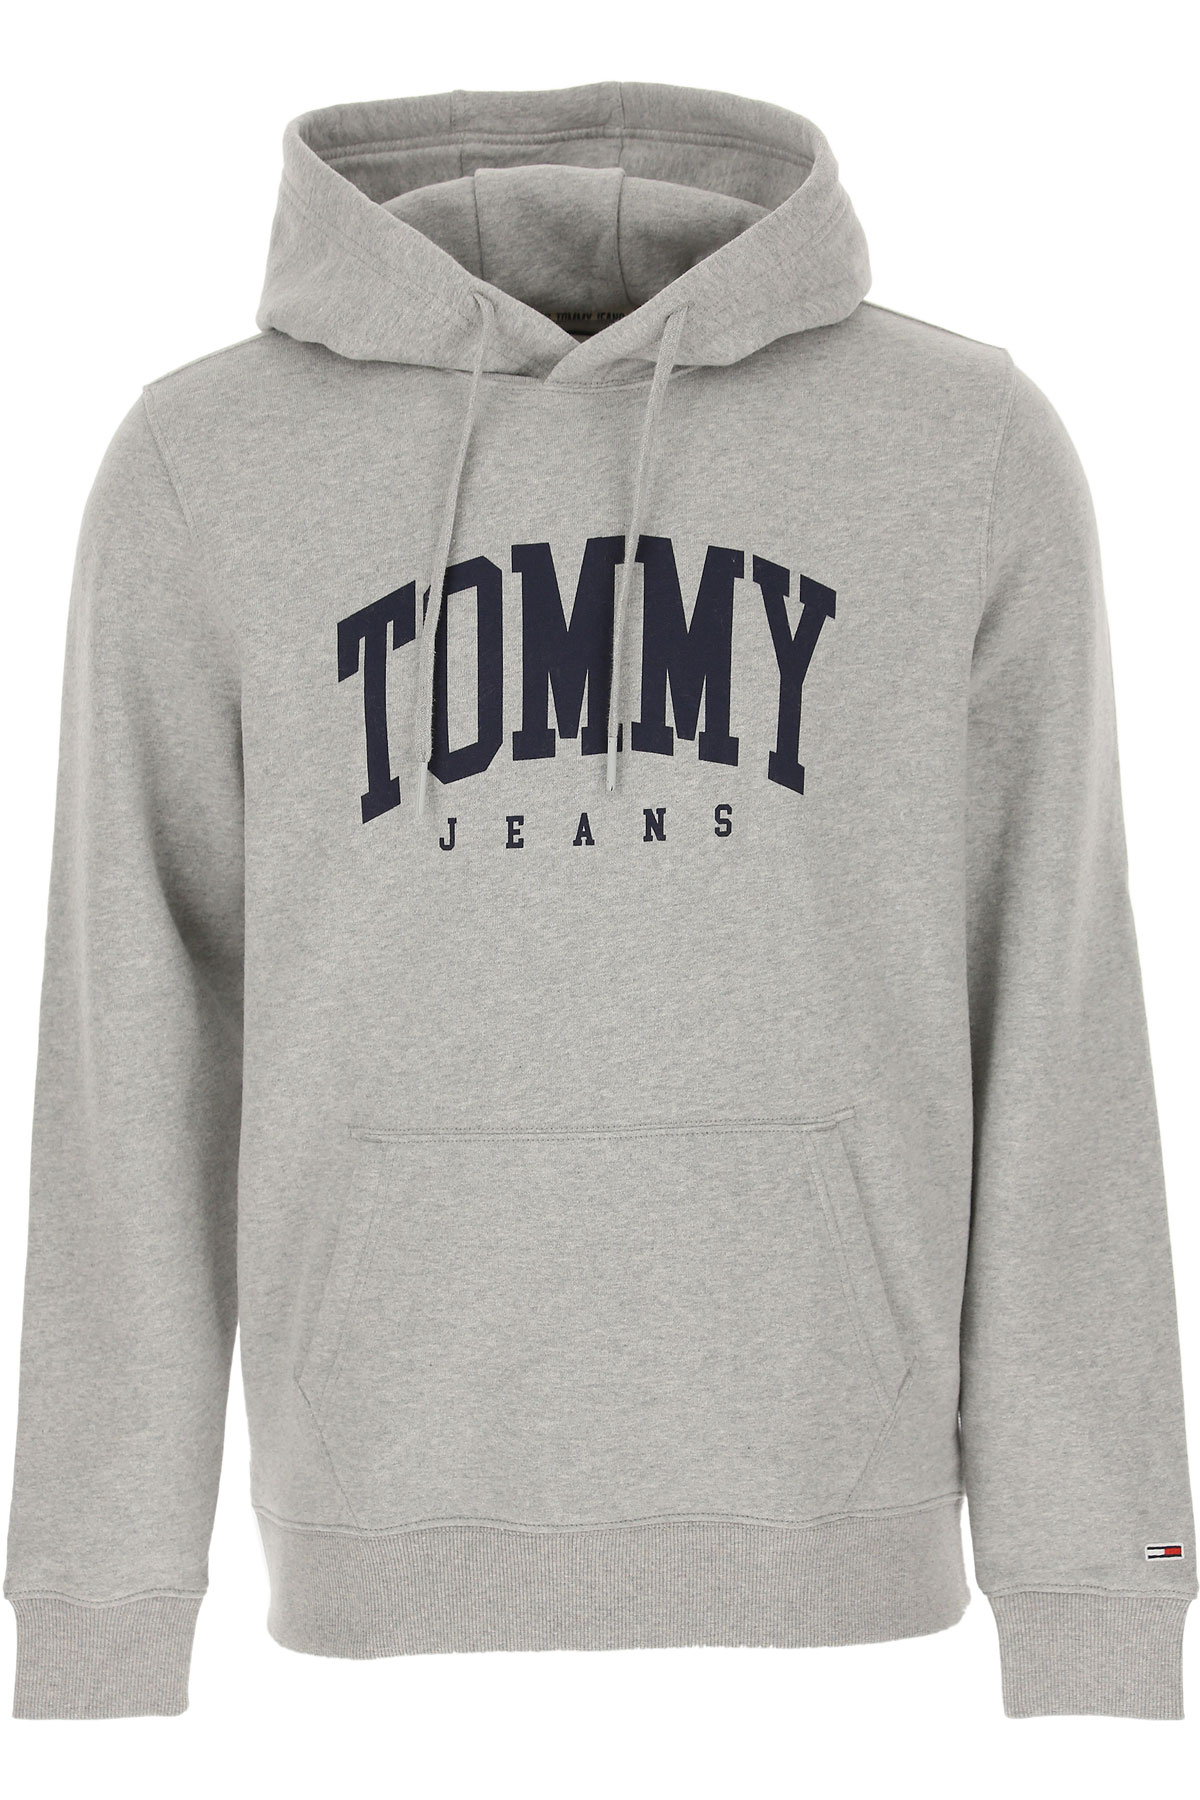 Tommy Hilfiger Sweatshirt für Herren, Kapuzenpulli, Hoodie, Sweats Günstig im Sale, Grau, Baumwolle, 2017, L M S XL